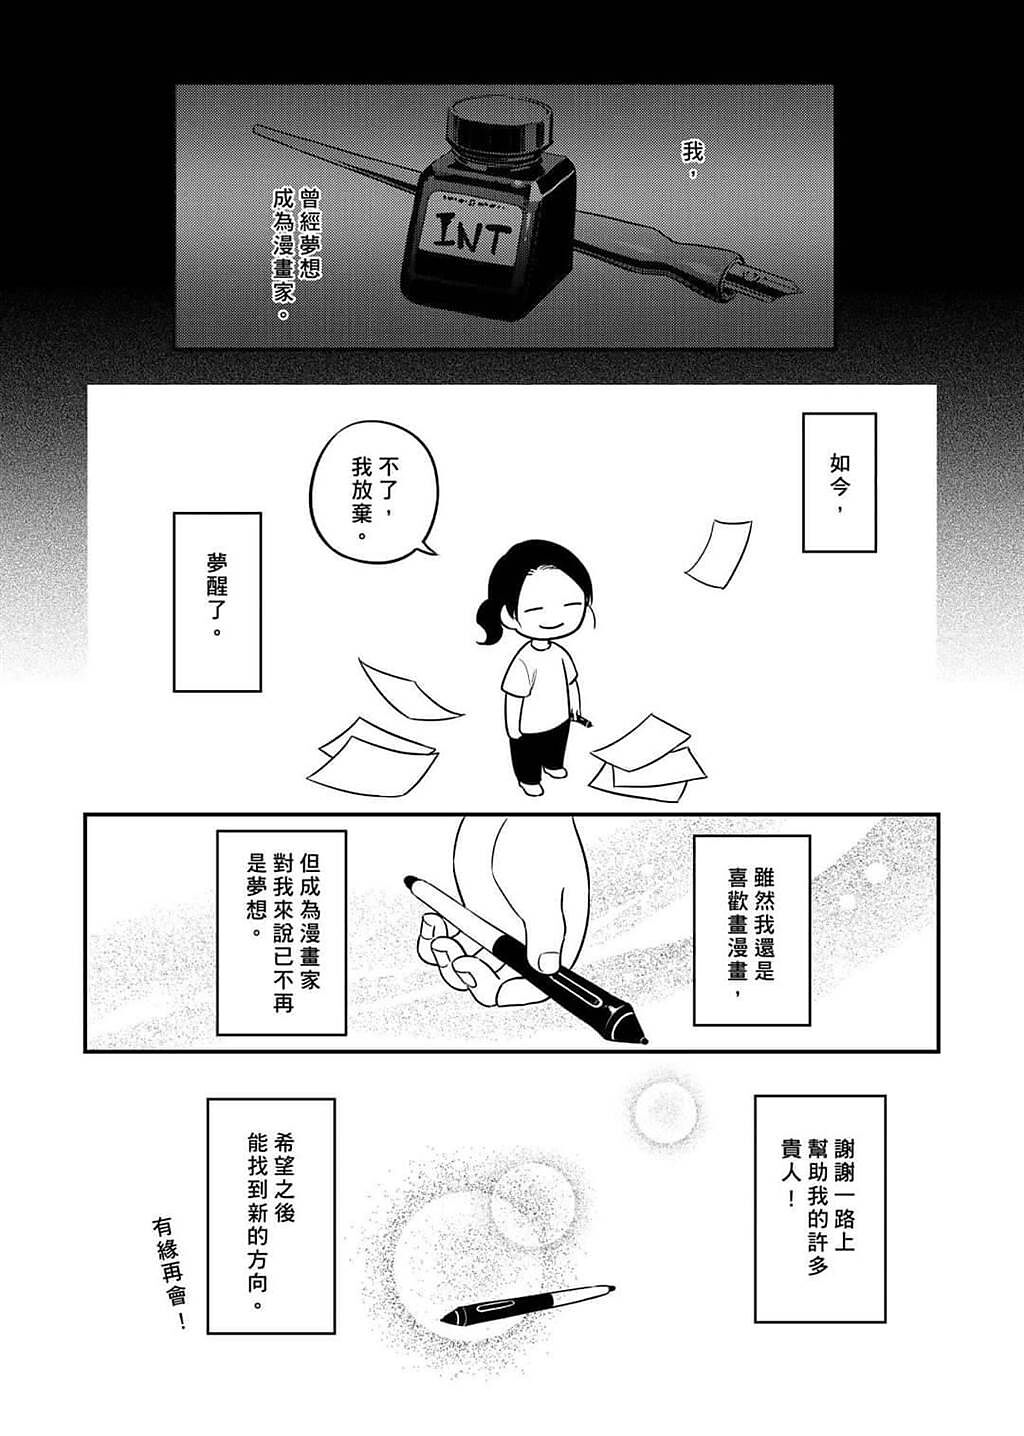 漫畫家頸椎將稿費過低、腰斬等台灣創作者面臨的現實衝擊畫為短篇漫畫，投稿「畫我」短漫畫比賽，獲網路人氣獎。(摘自比賽官網)